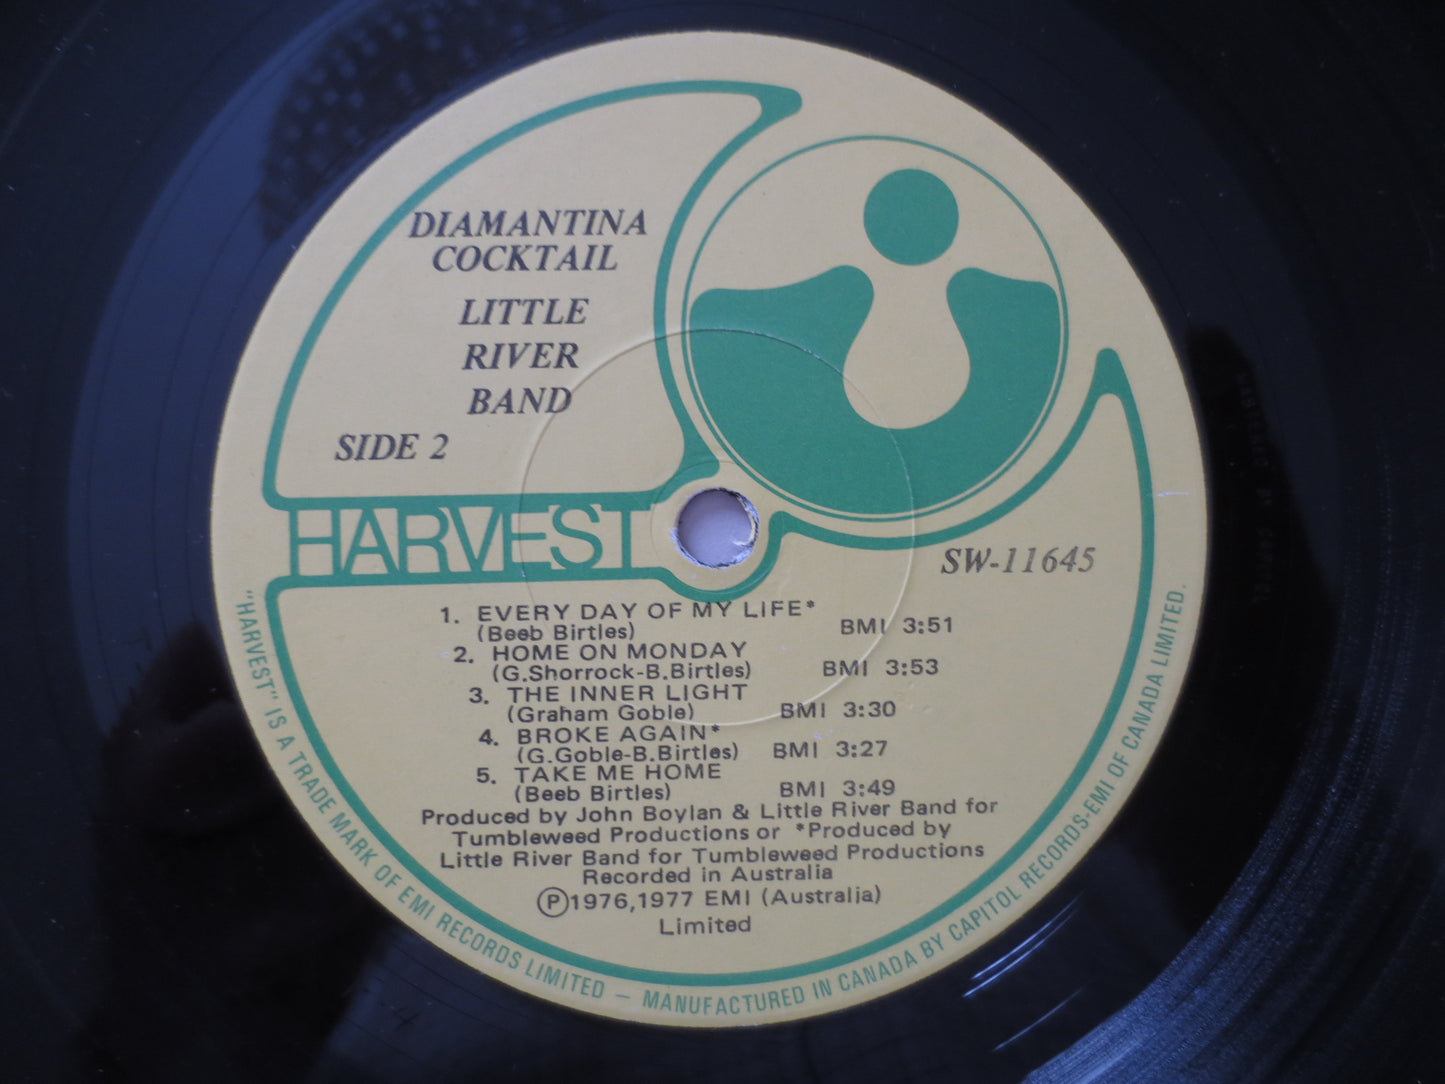 LITTLE RIVER Band, Diamantina COCKTAIL, Vintage Vinyl, Record Vinyl, Records, Rock Records, Vinyl Records, Lp, 1976 Records